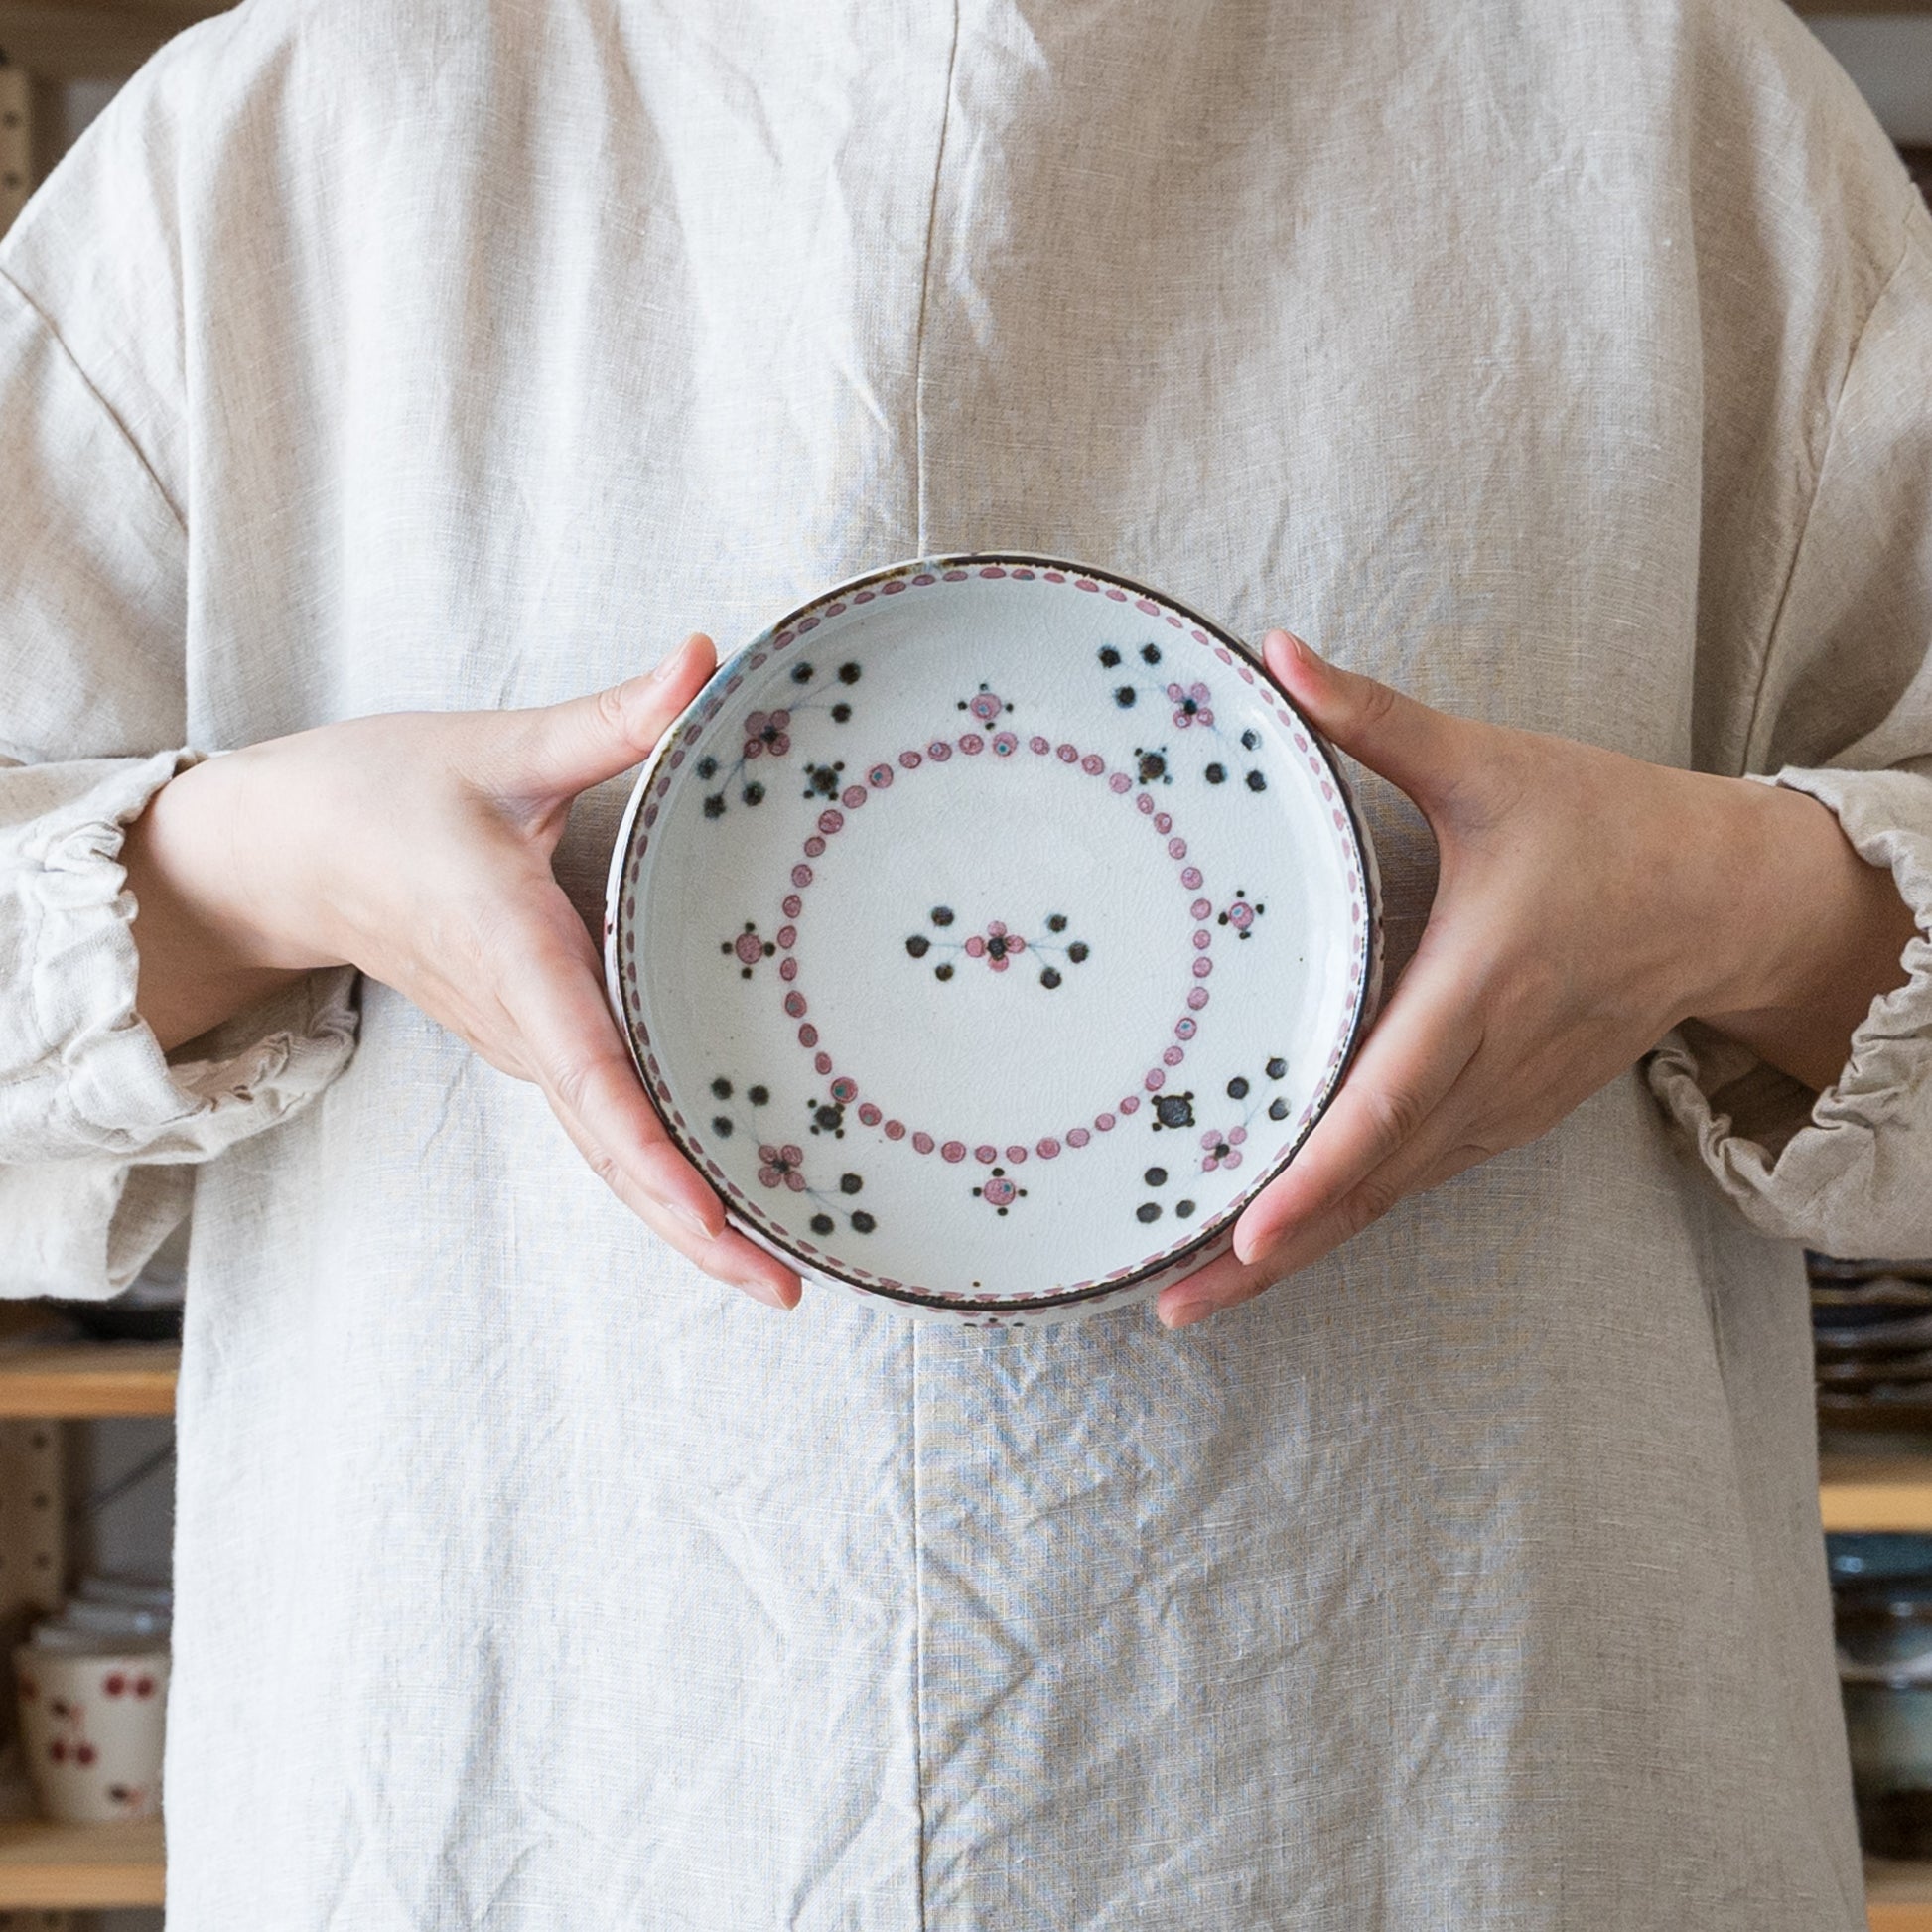 丈夫で使いやすい砥部焼陶彩窯の小花文の深皿